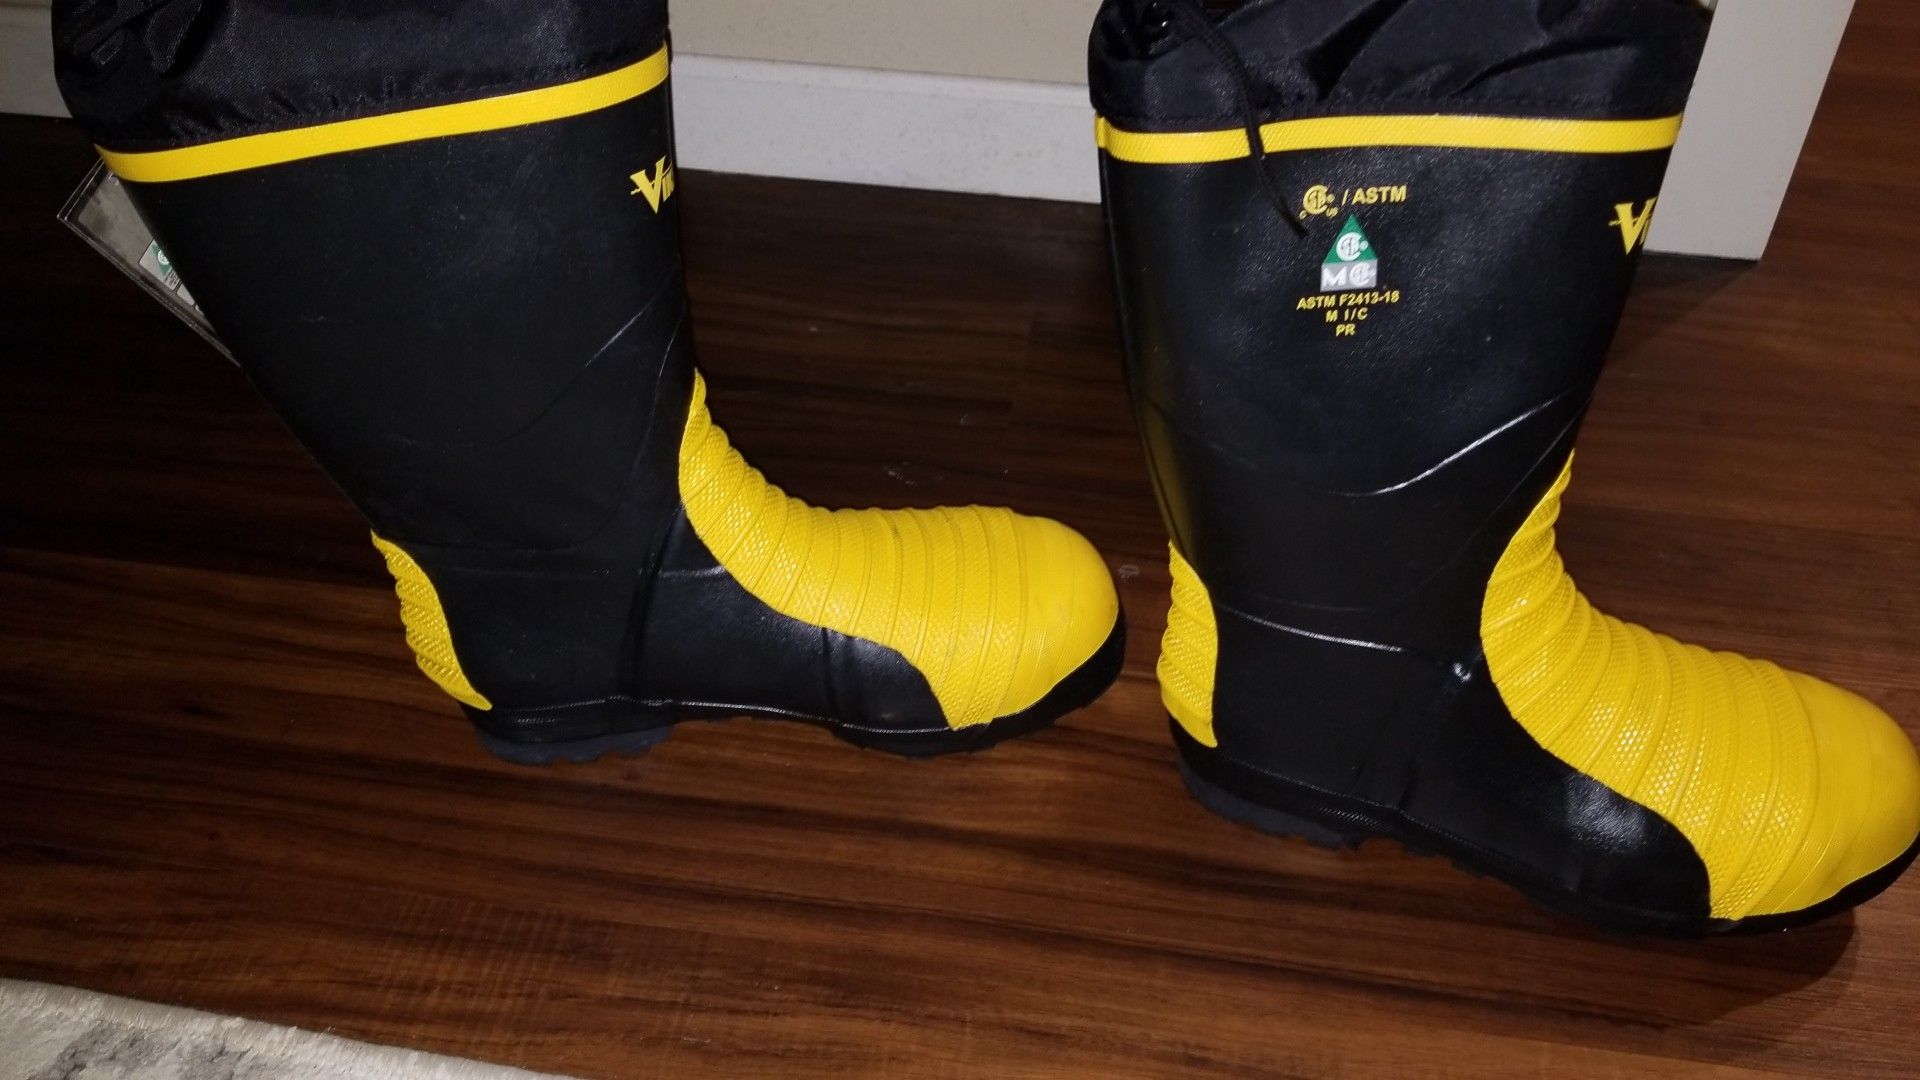 Viking work boots size 13 met guard heavy duty rubber steel toe